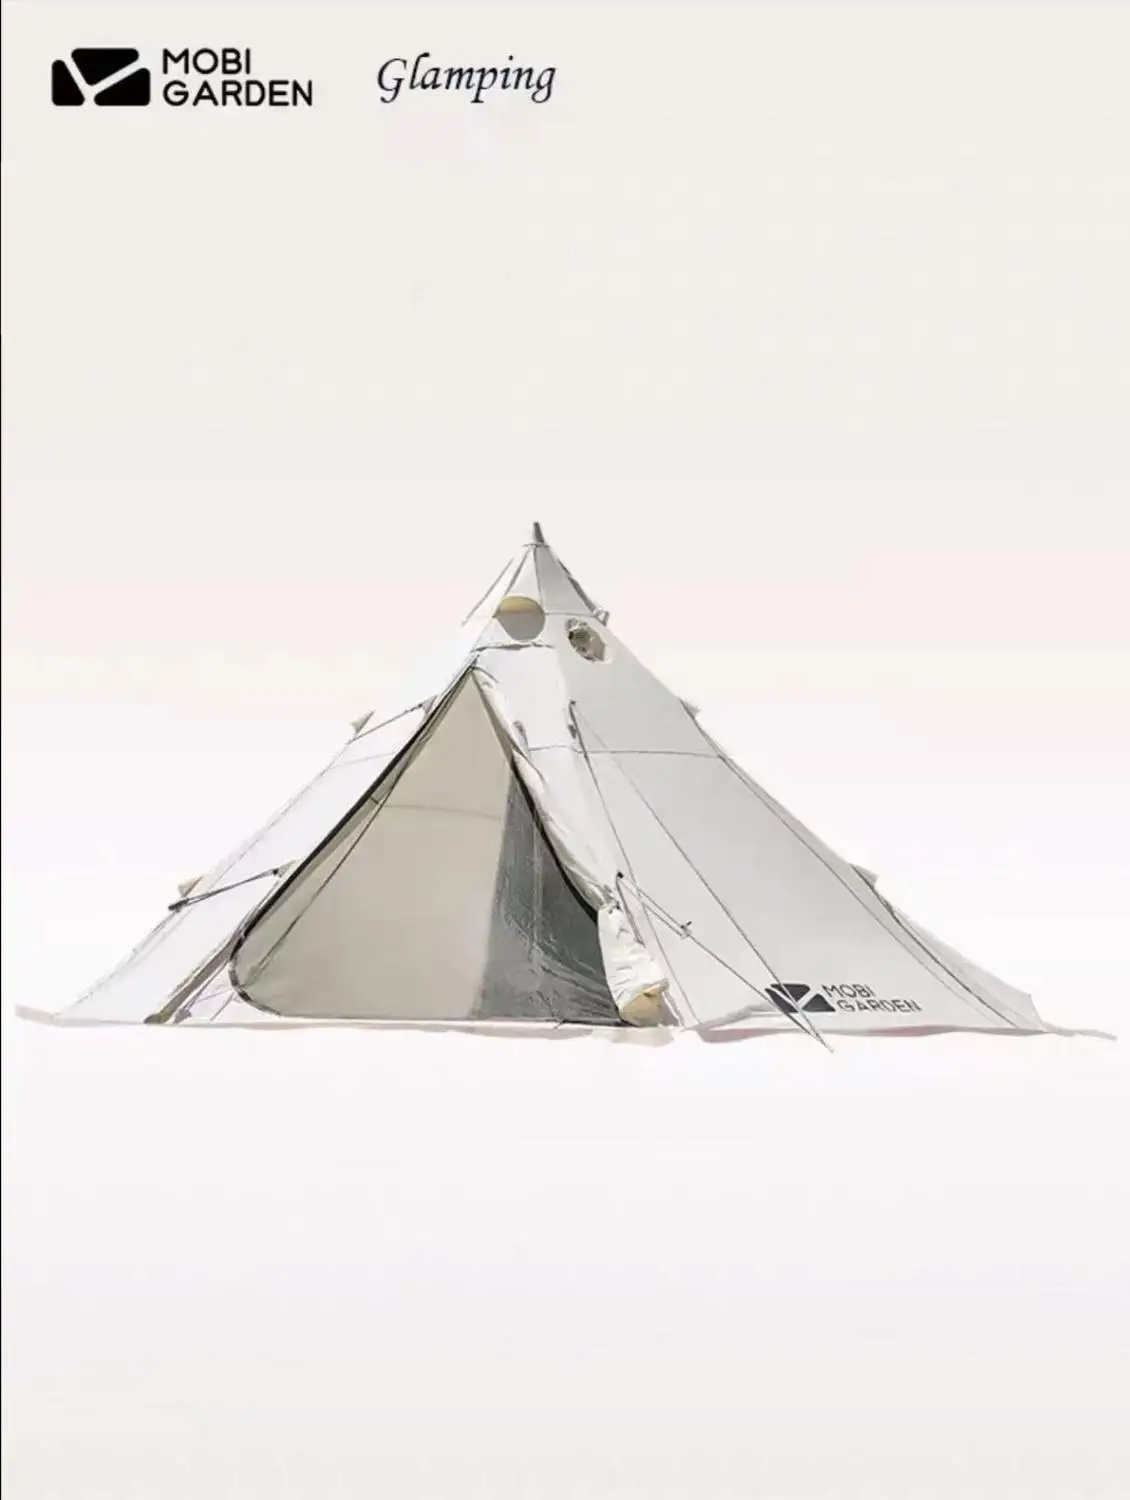 

Mobi garden/Era 230 палатка T/C многоугольный дизайн PU2000 семейный наружный пляжный кемпинг водонепроницаемый алюминиевый стойкий UV50 +